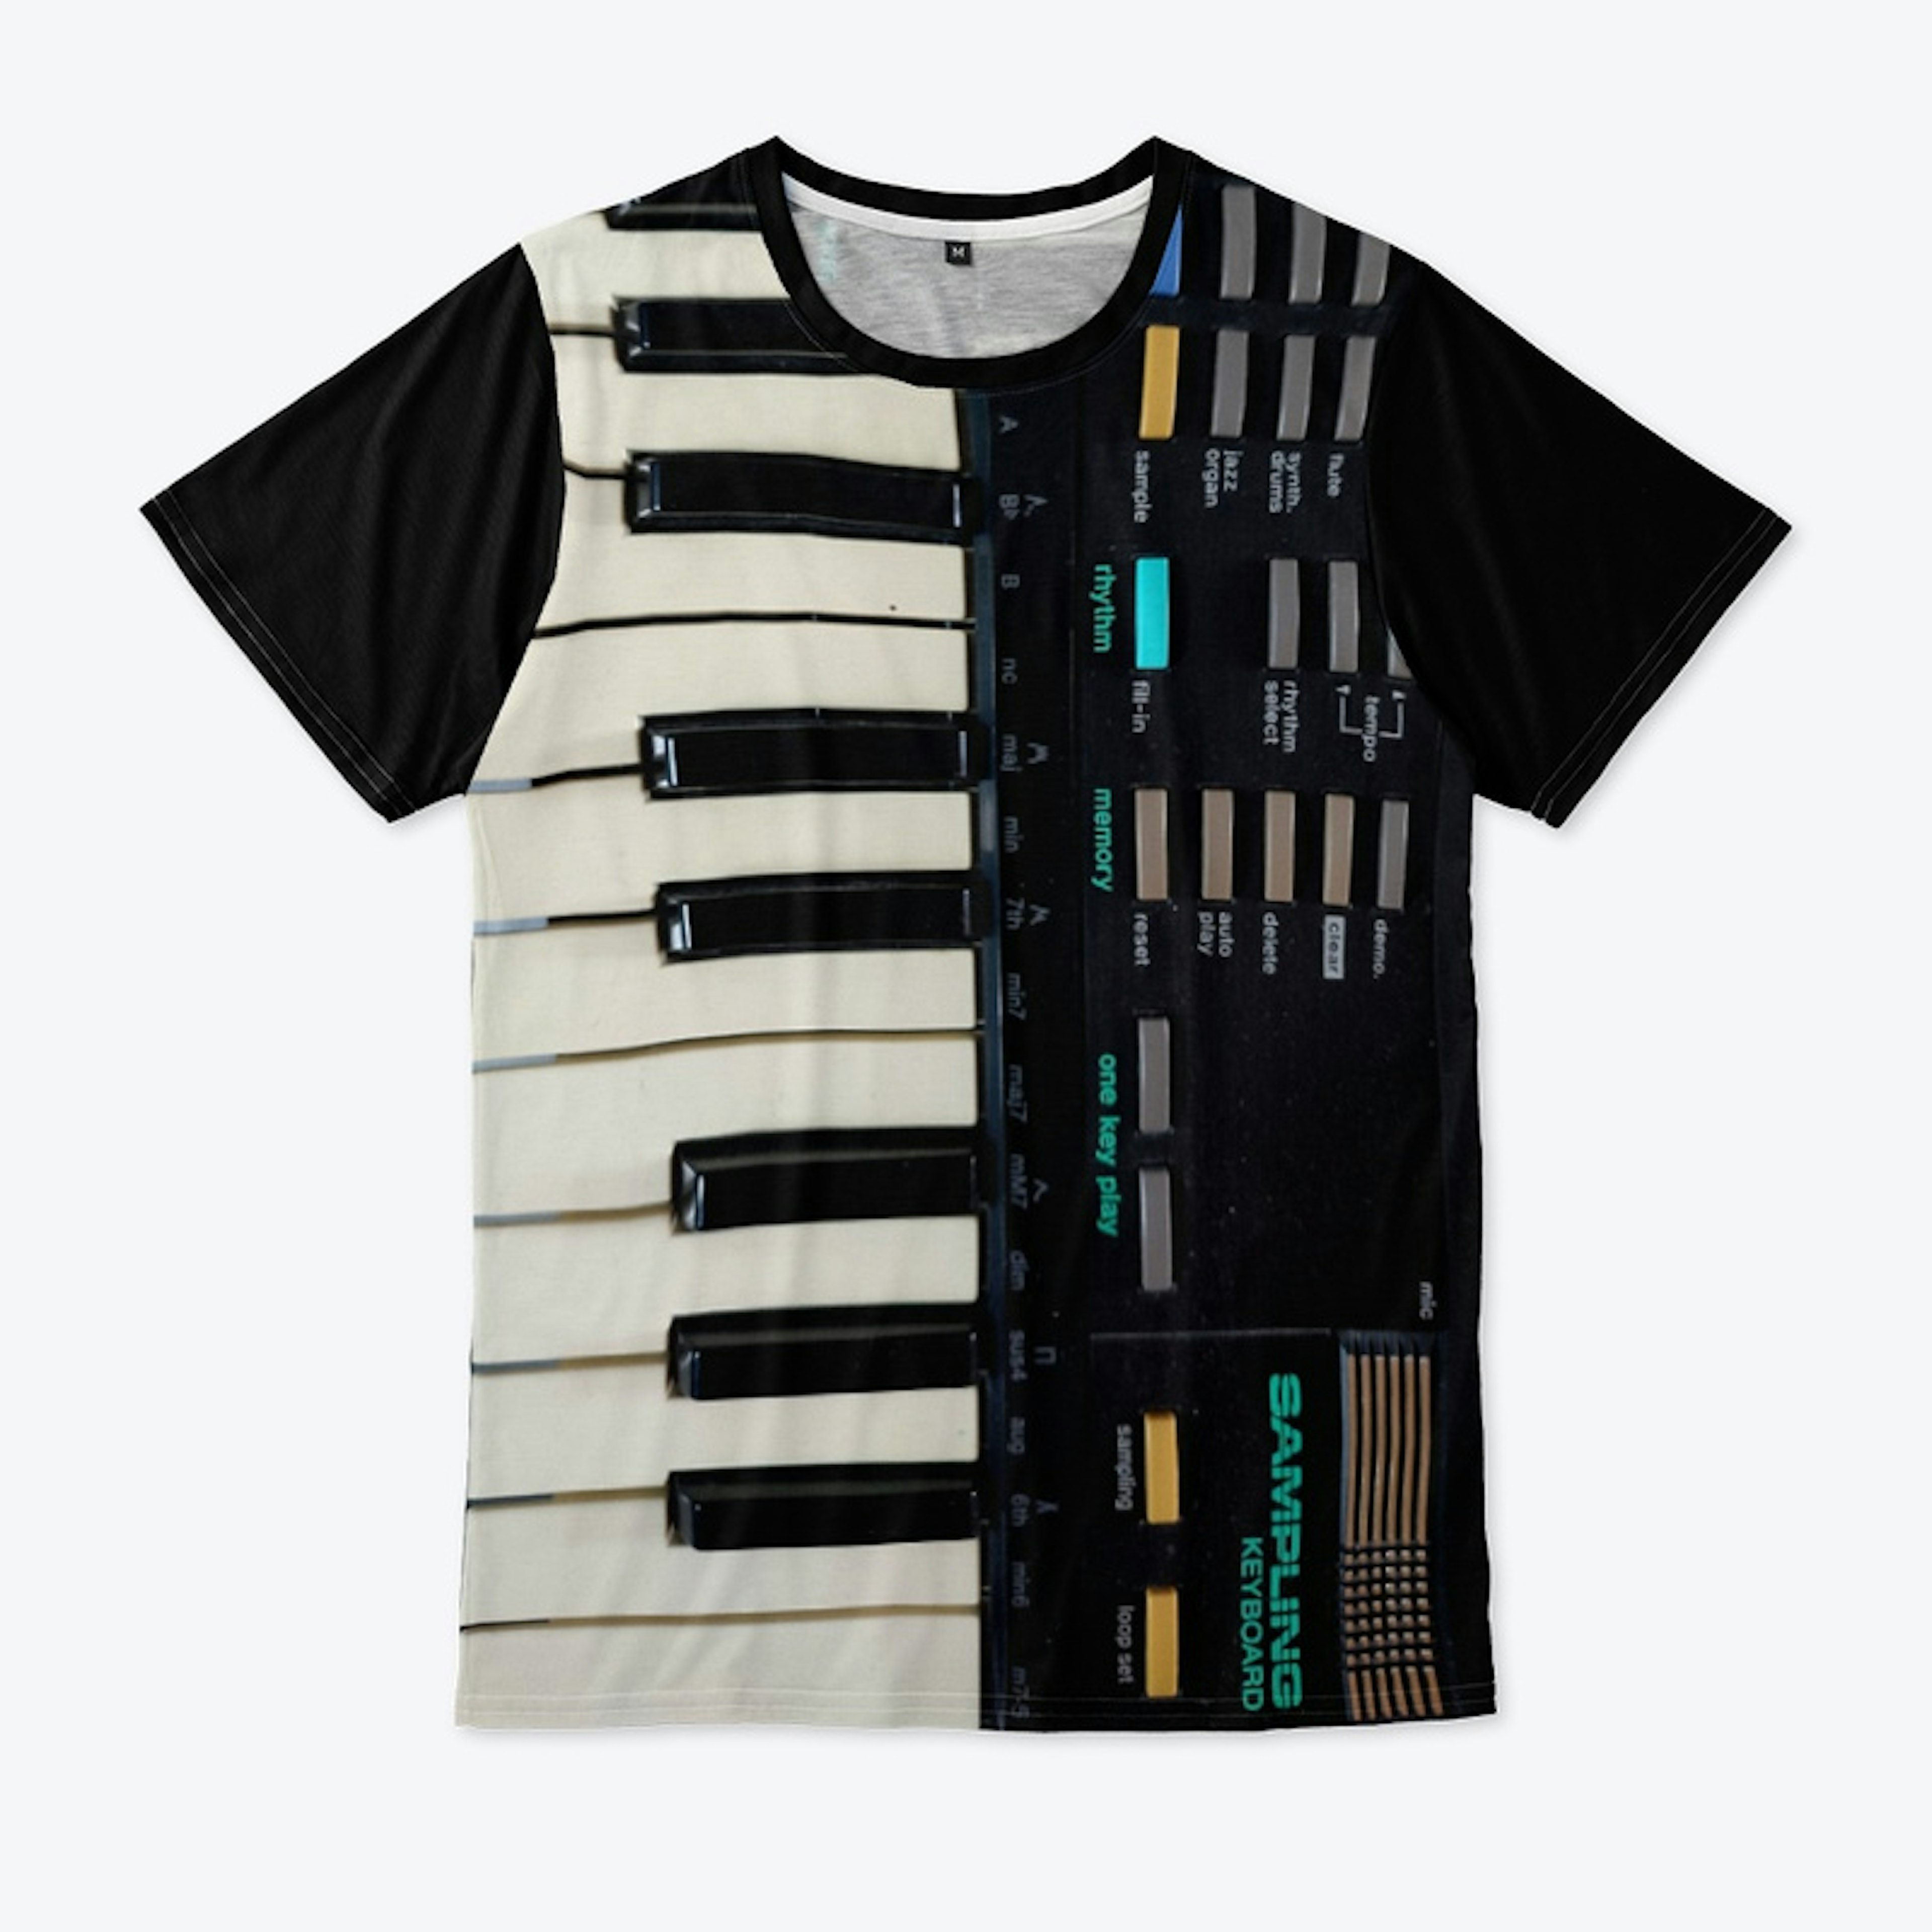 Sampling Keyboard Shirt